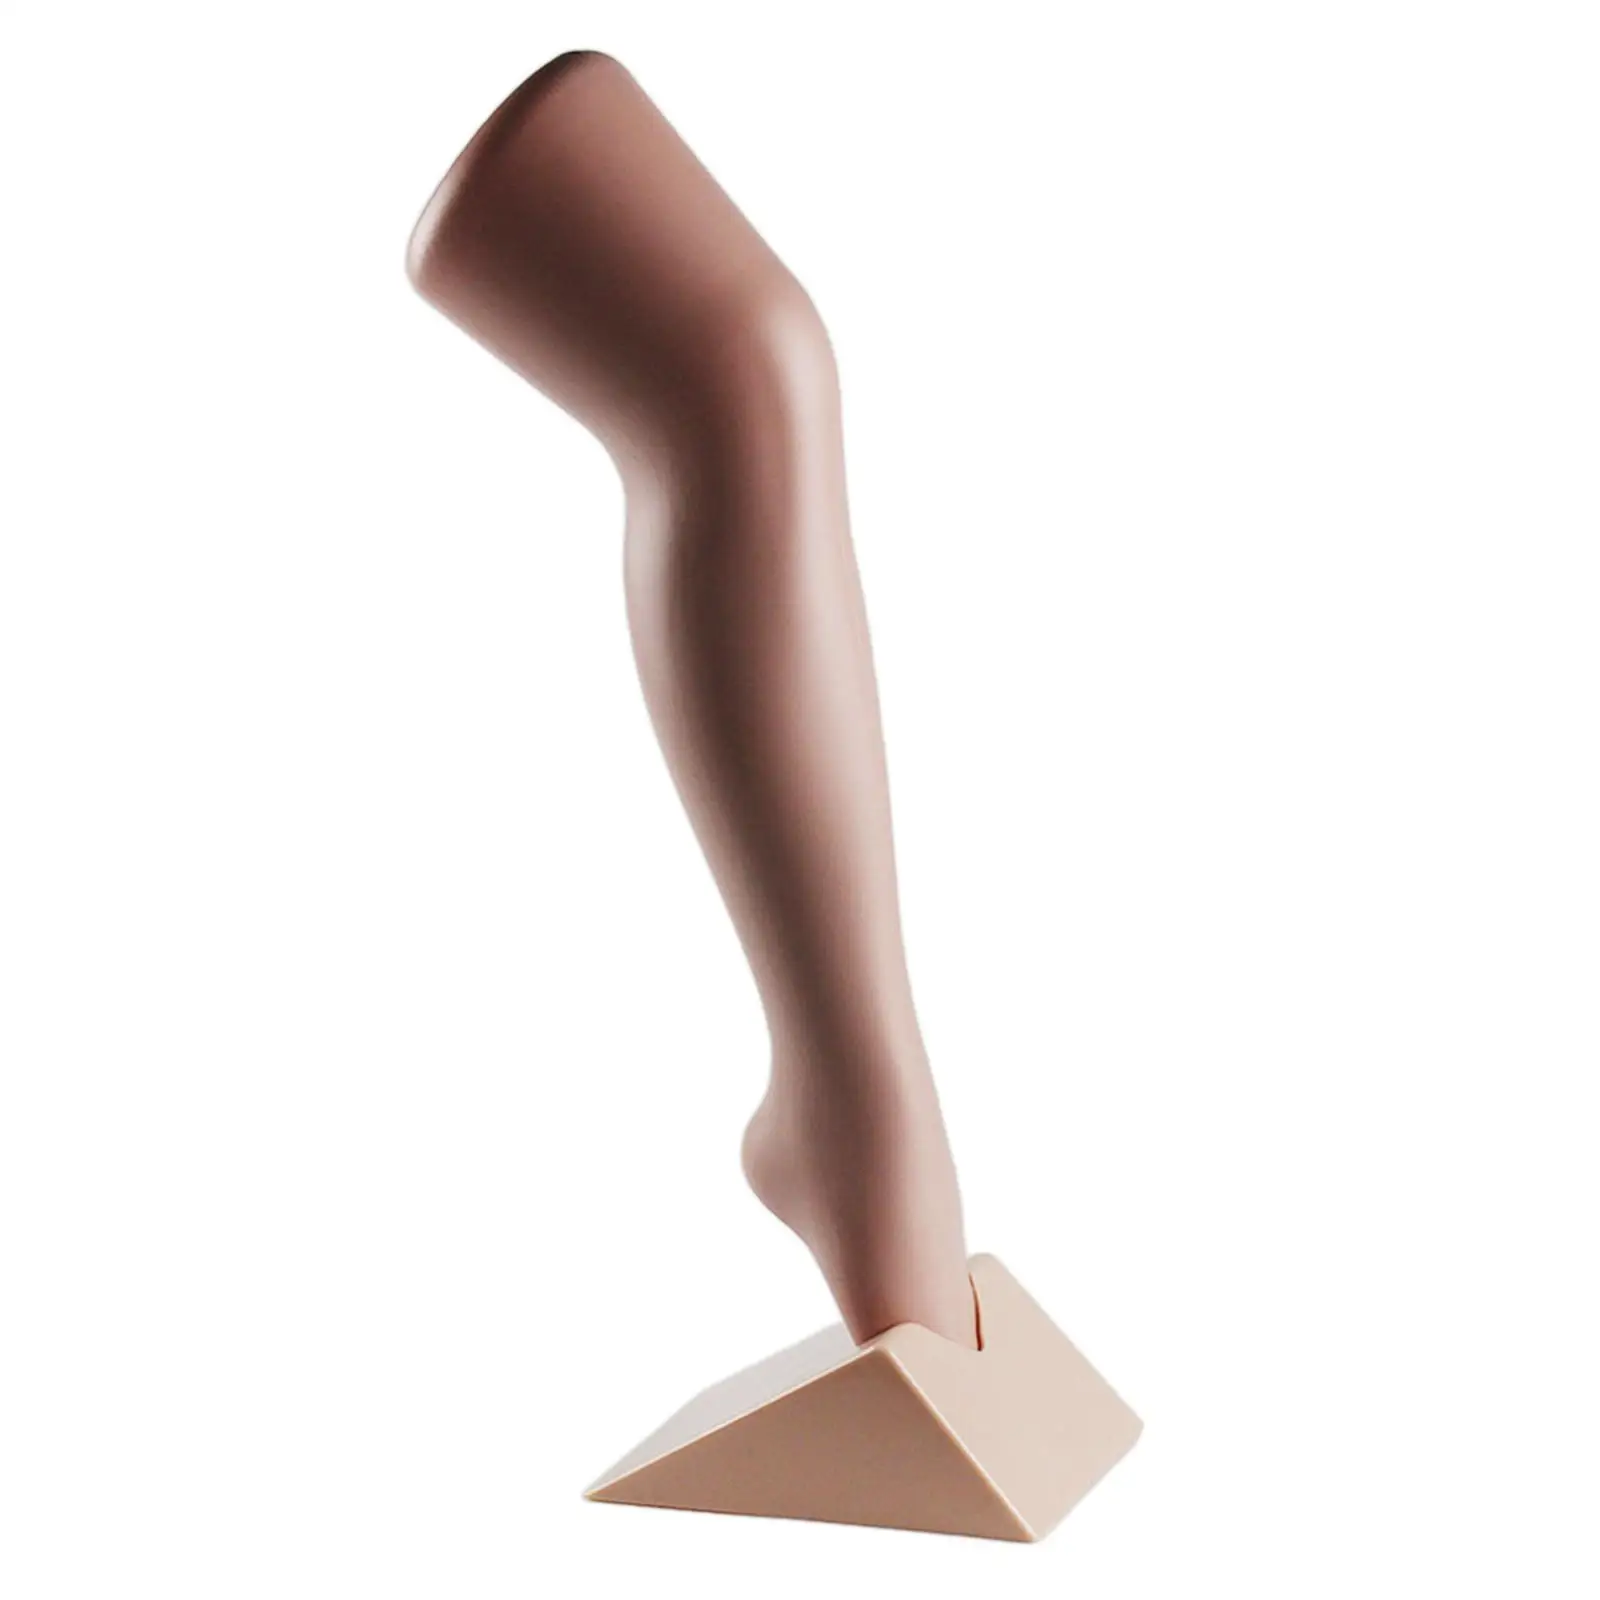  Leg for Display - Children  Commercial Leg Grils Standing Leg Standing, , Plastic, Exhibition  Leg